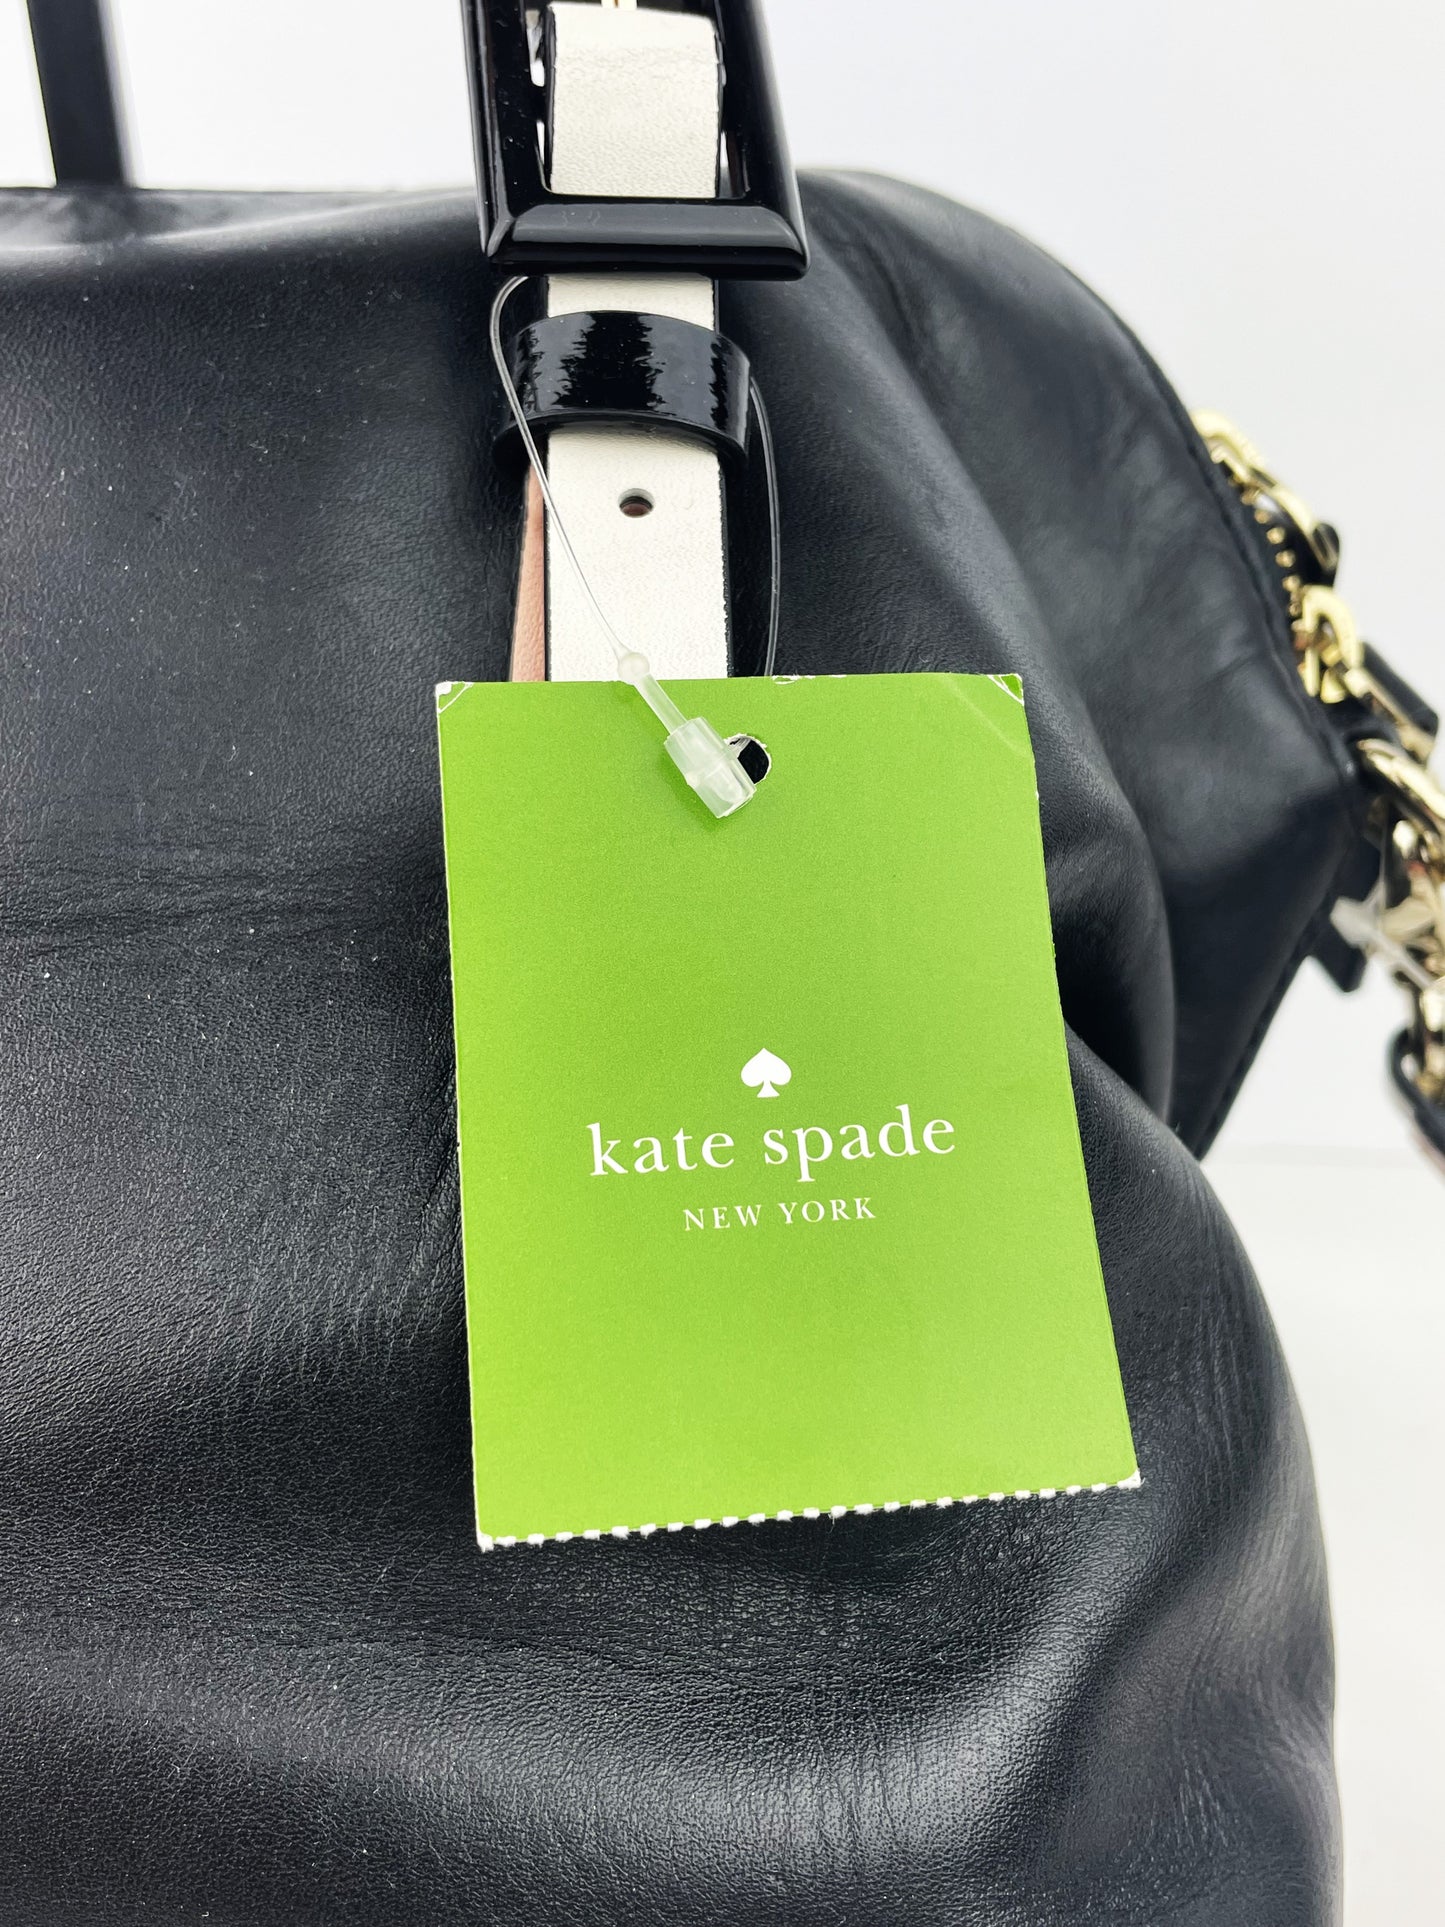 Kate Spade New York Waverly St Drew Crossbody Satchel Purse w/Tag